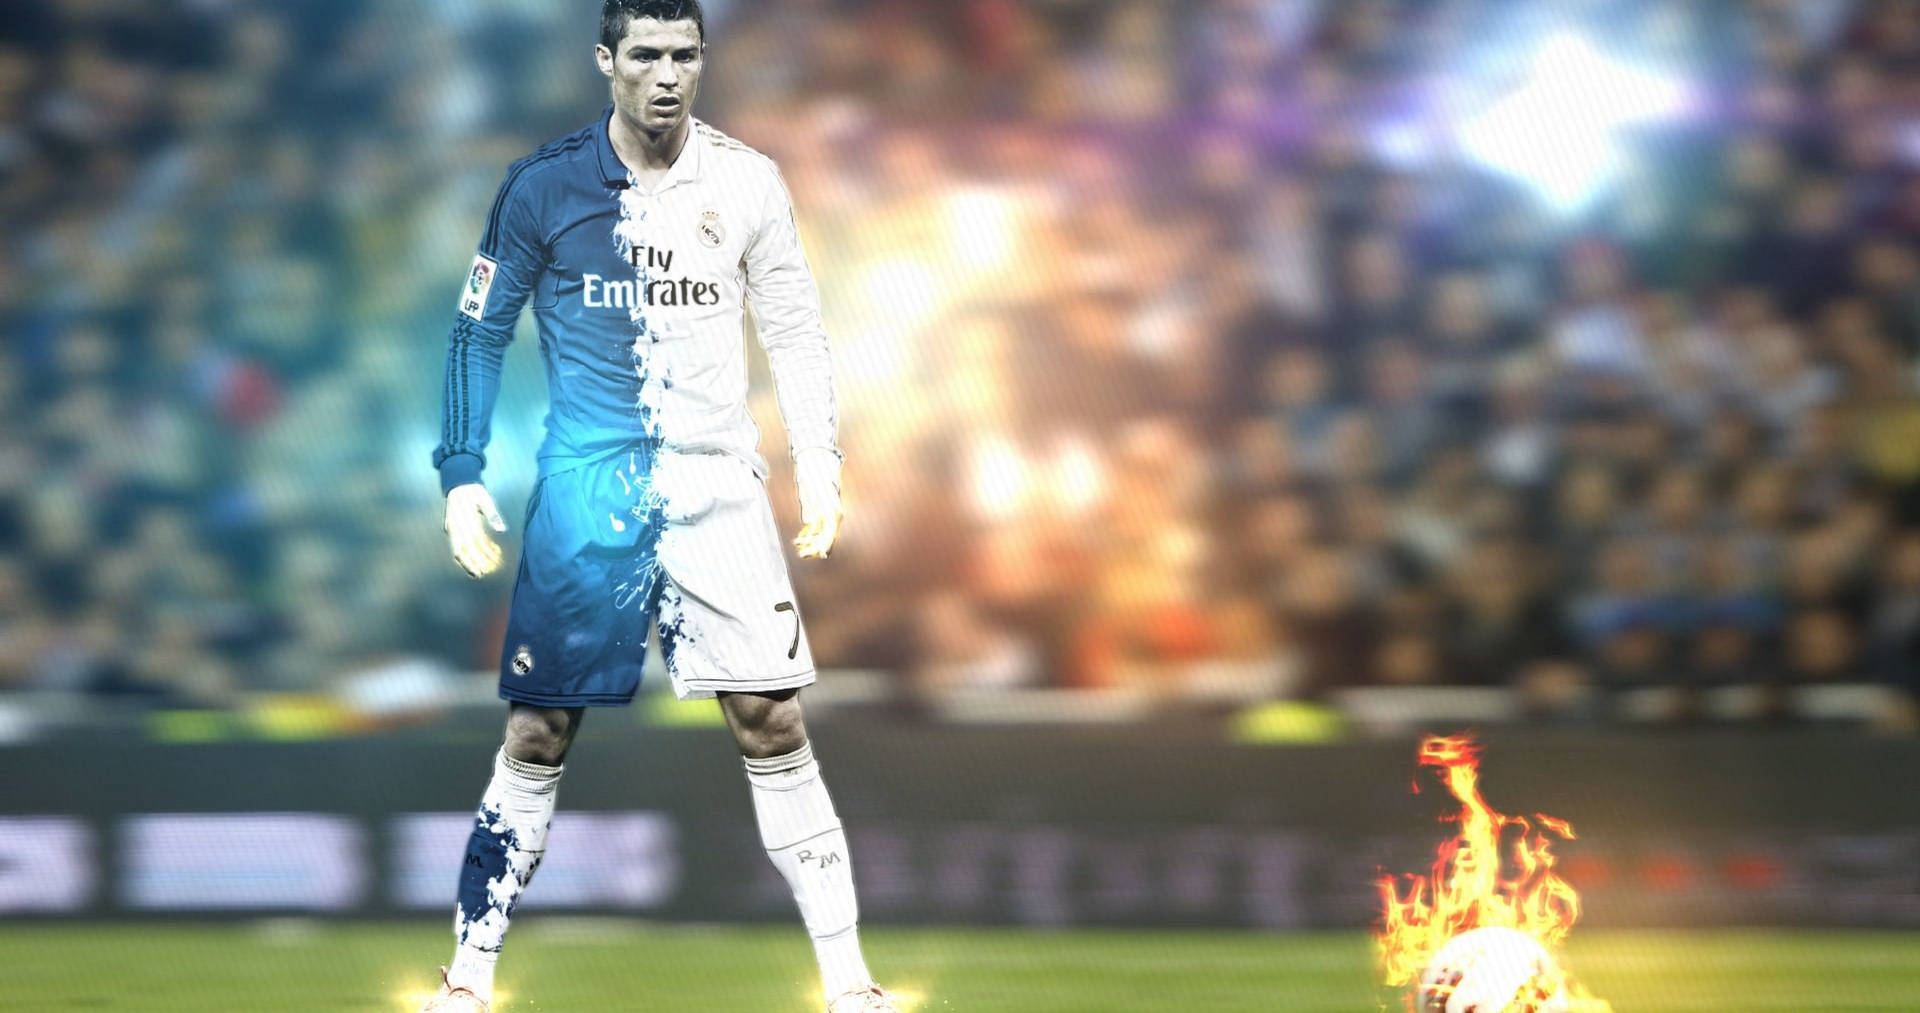 4096X2160 Cristiano Ronaldo Wallpaper and Background